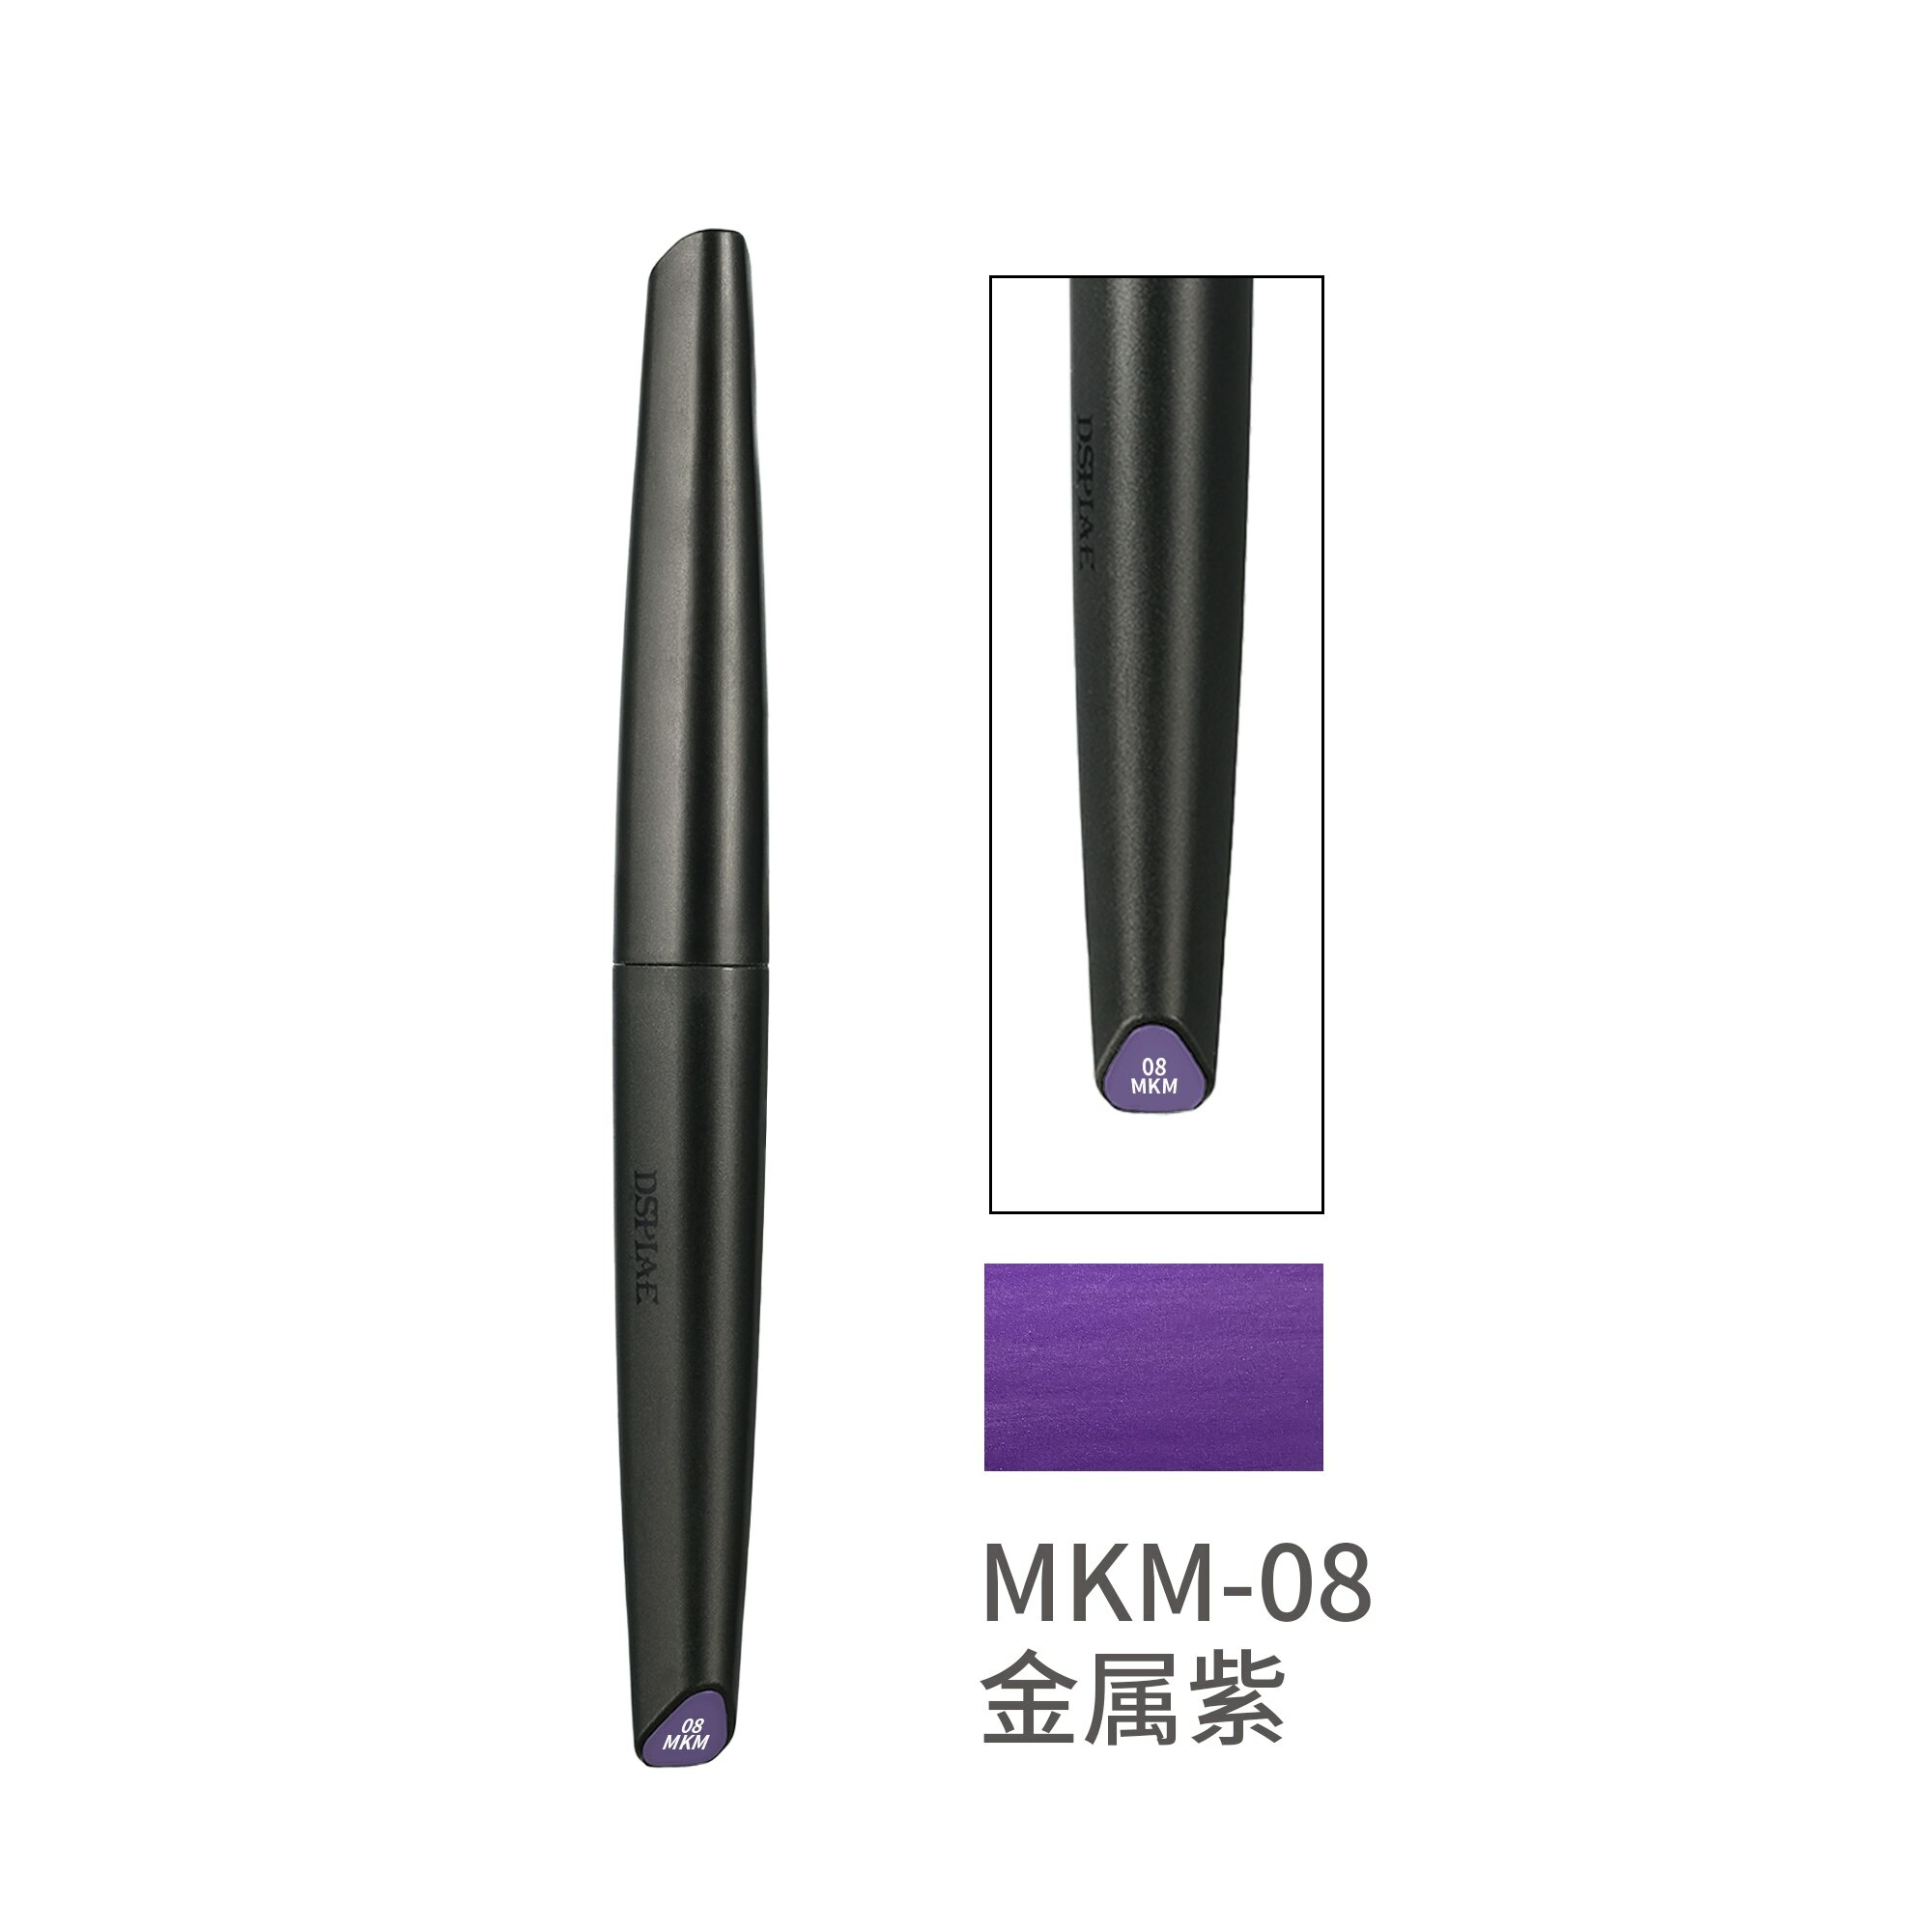 MKM-08  краска  Маркер пурпурный металлик